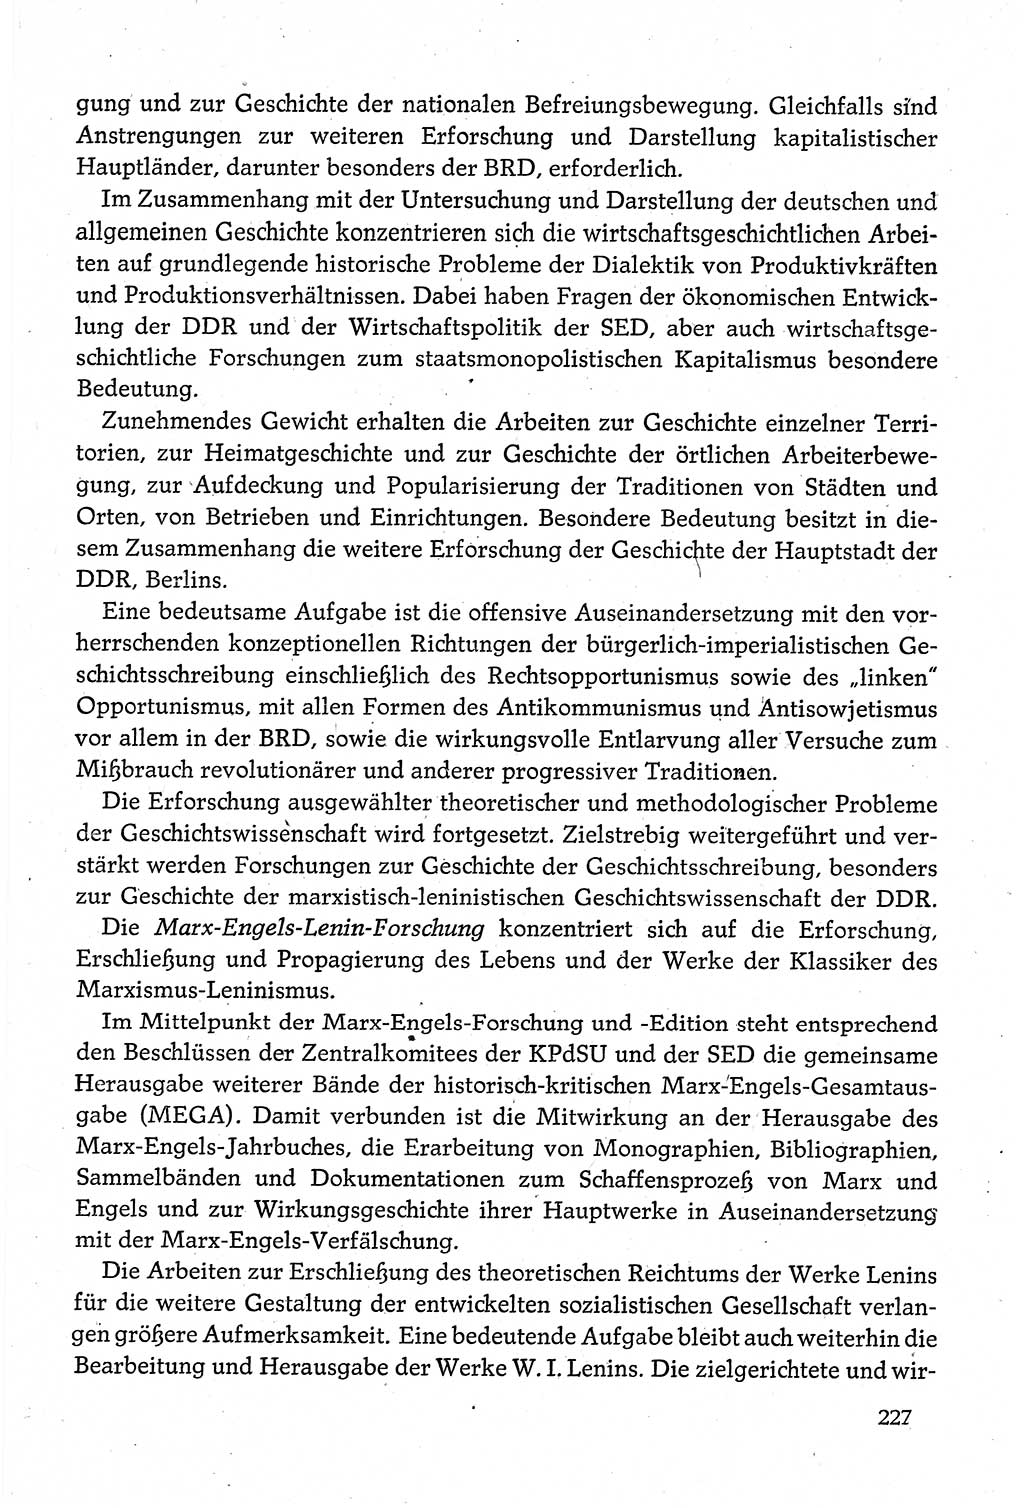 Dokumente der Sozialistischen Einheitspartei Deutschlands (SED) [Deutsche Demokratische Republik (DDR)] 1980-1981, Seite 227 (Dok. SED DDR 1980-1981, S. 227)